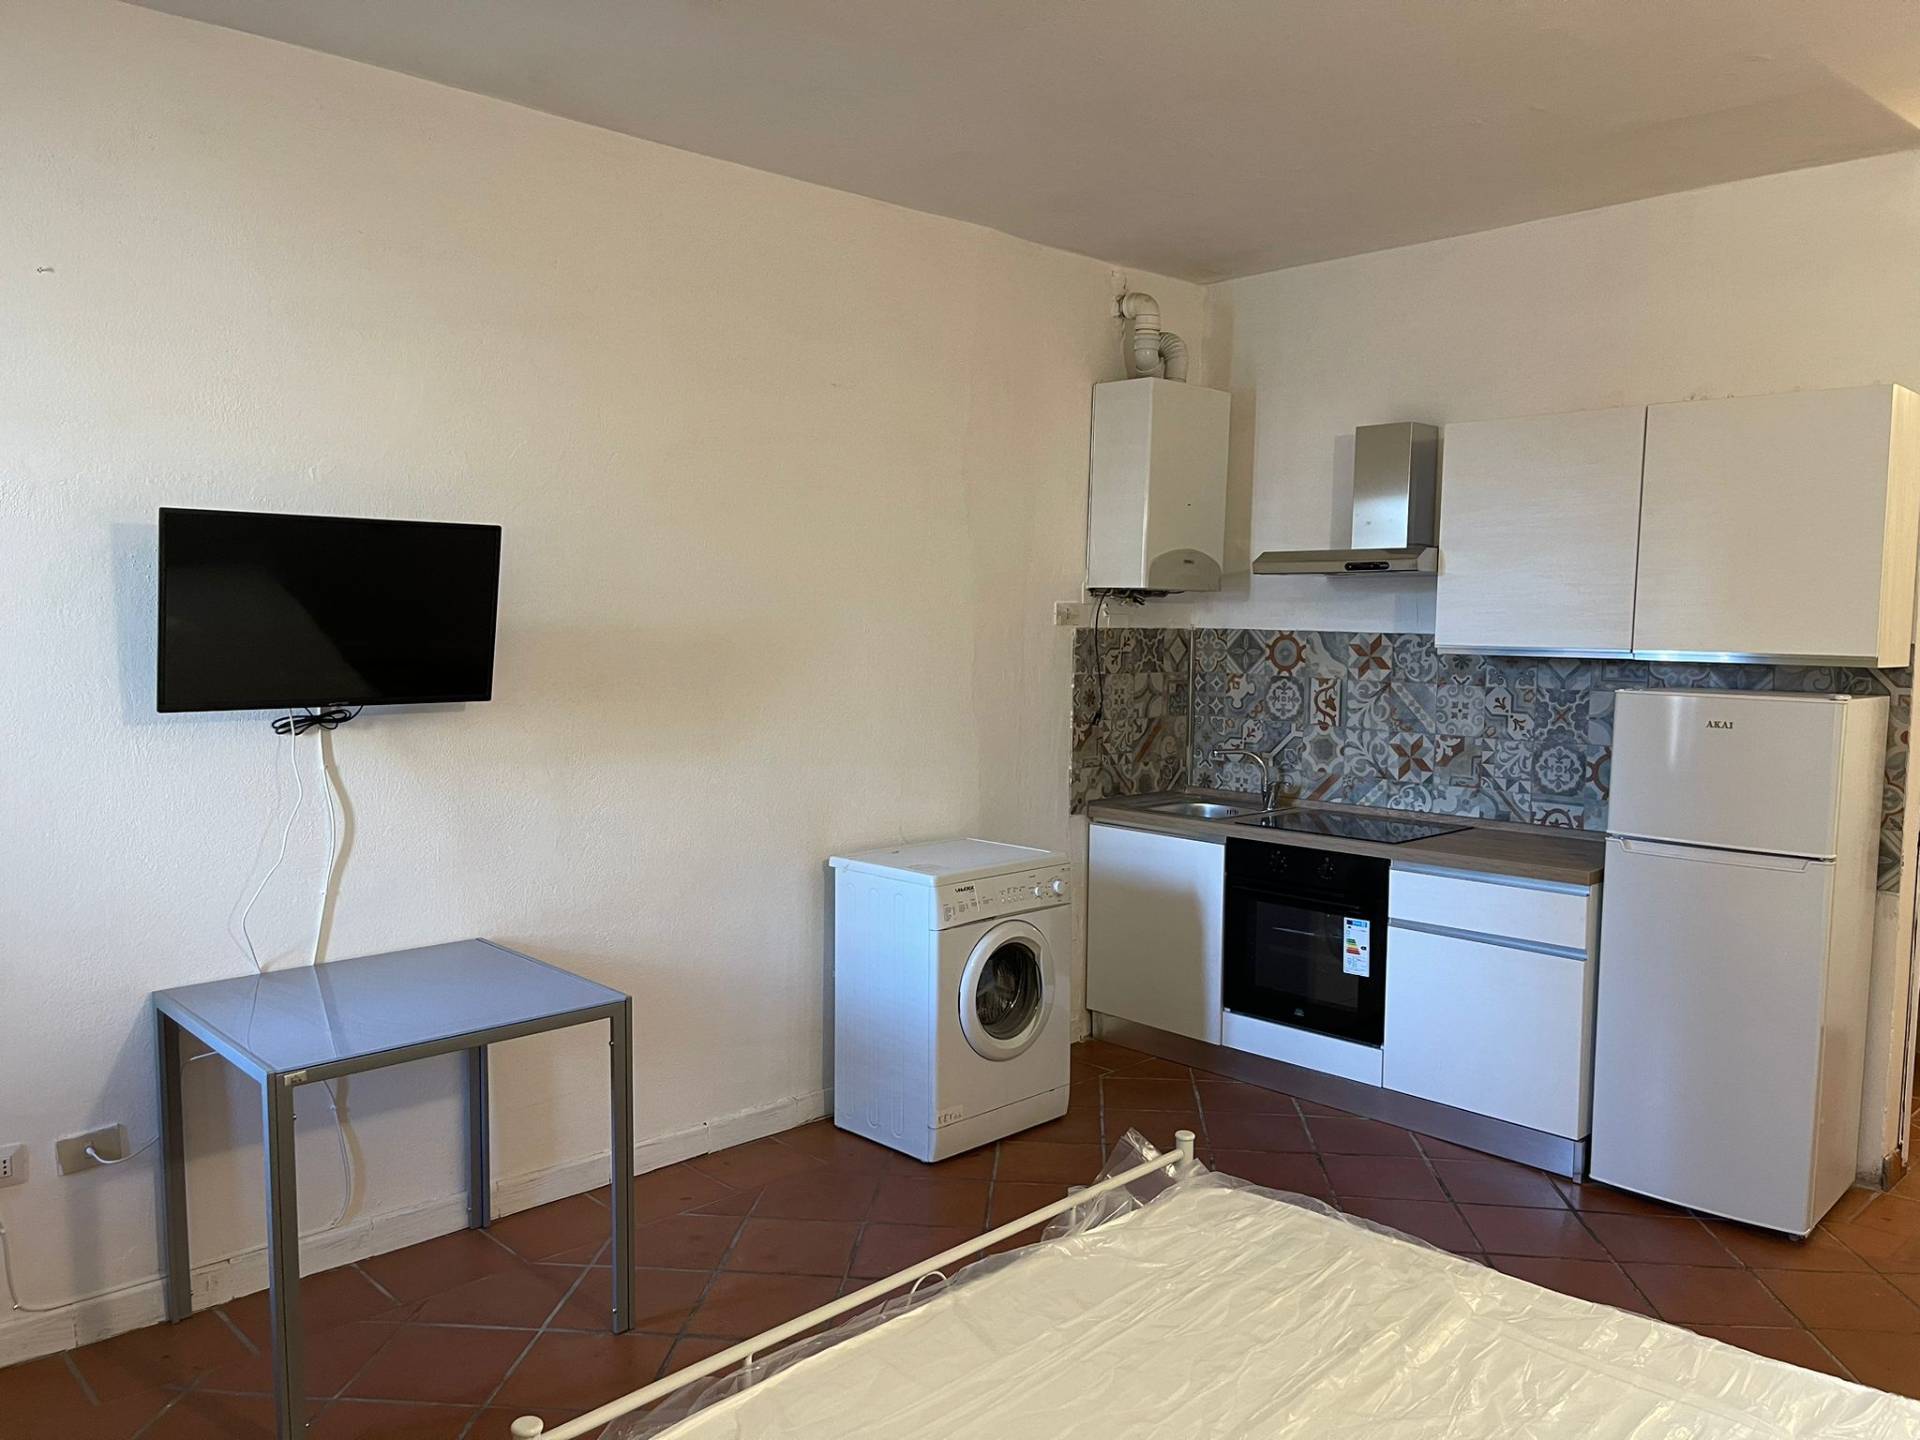 Appartamento in affitto a Ferrara, 1 locali, zona Località: Centrostorico, prezzo € 450 | PortaleAgenzieImmobiliari.it